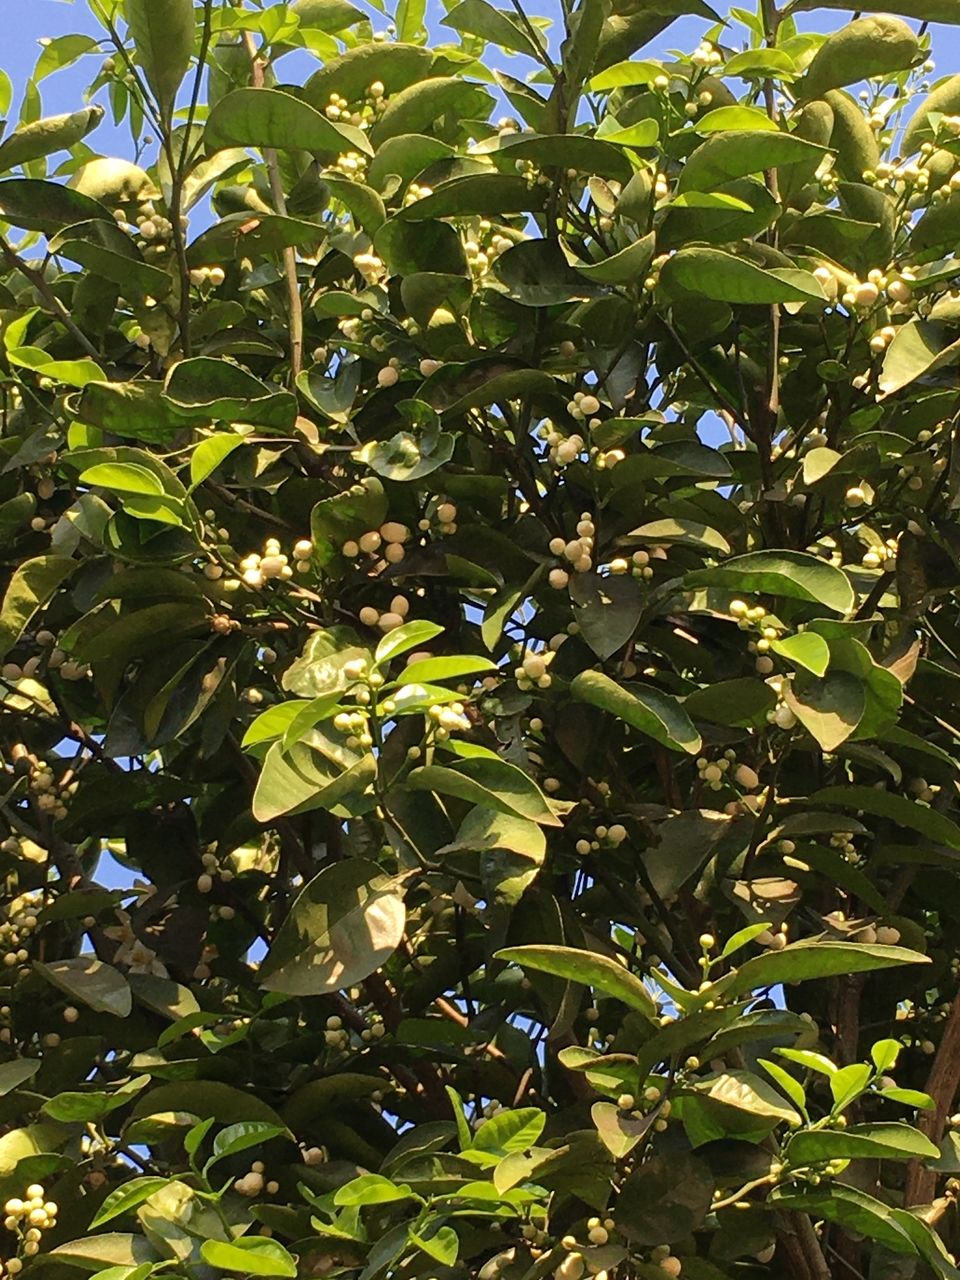 事務所の庭に咲く蜜柑の木のつぼみ